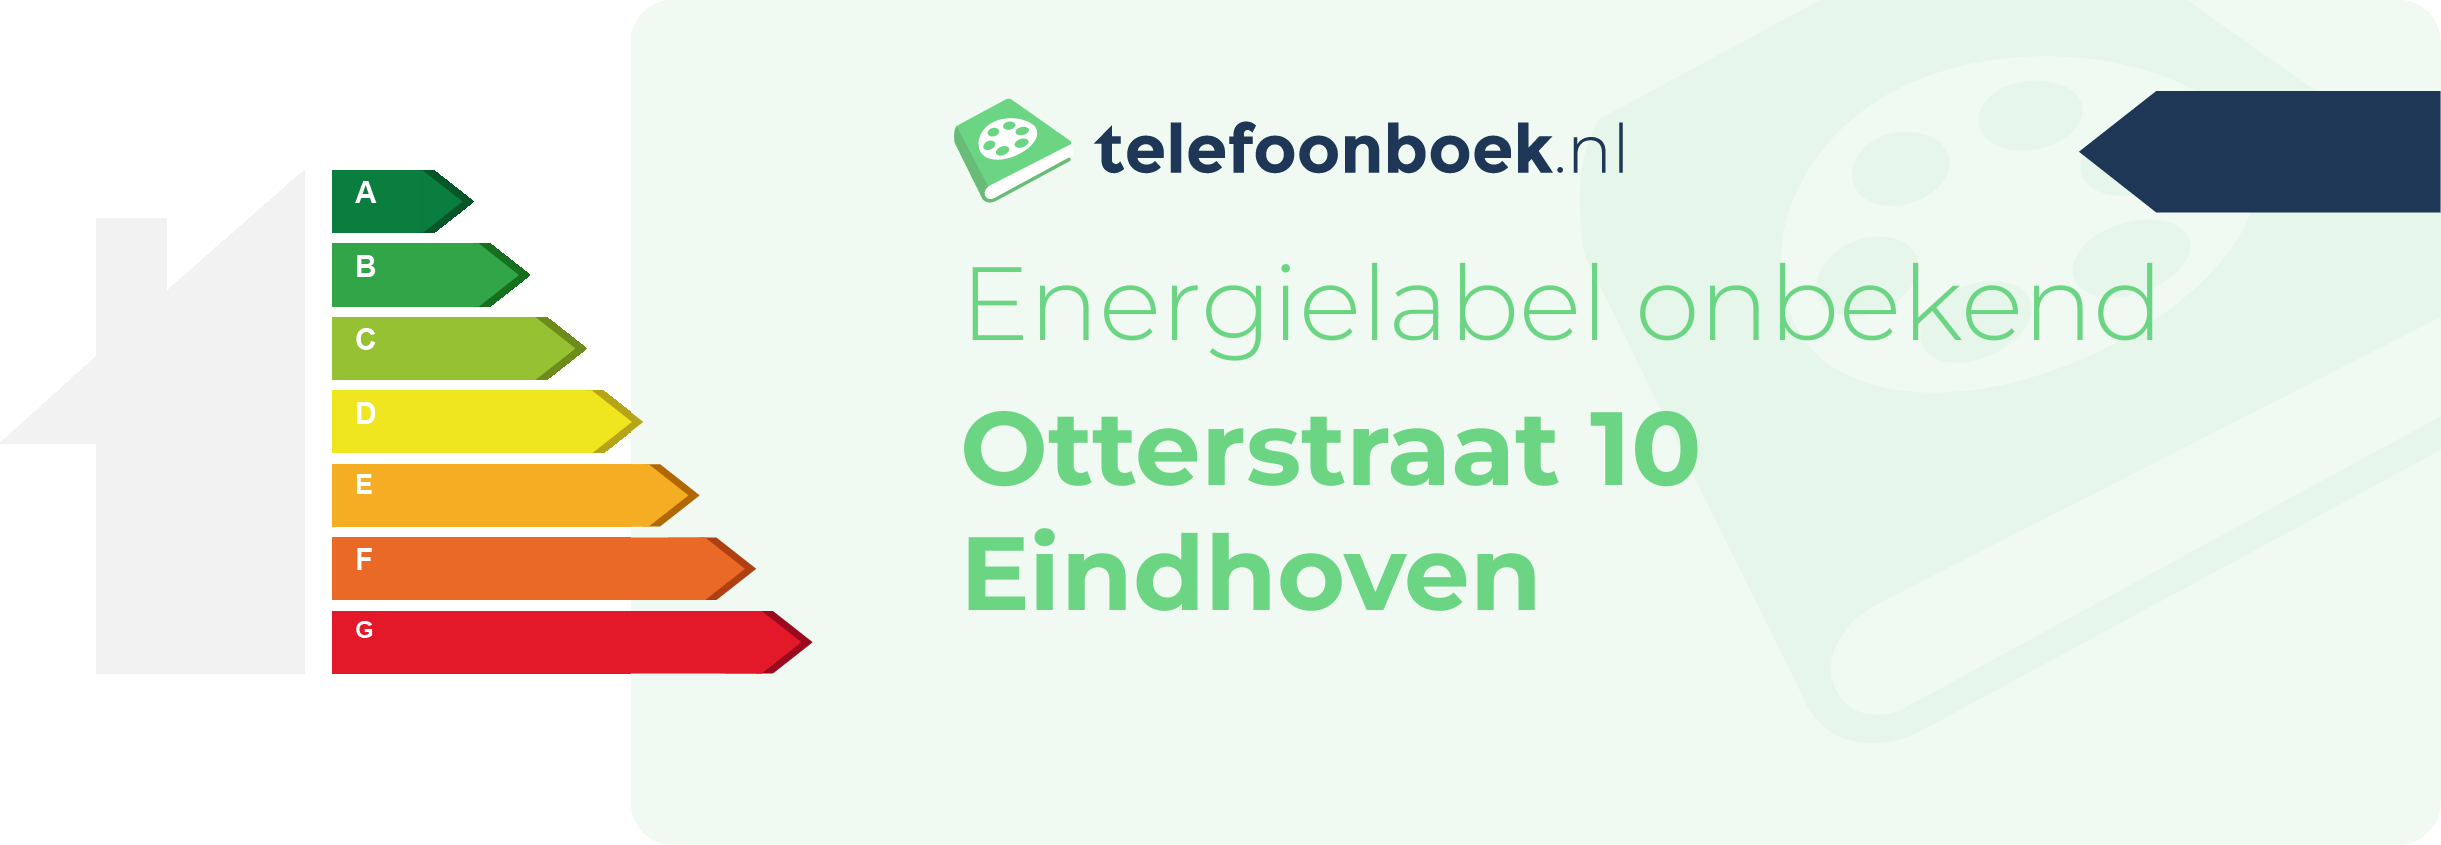 Energielabel Otterstraat 10 Eindhoven